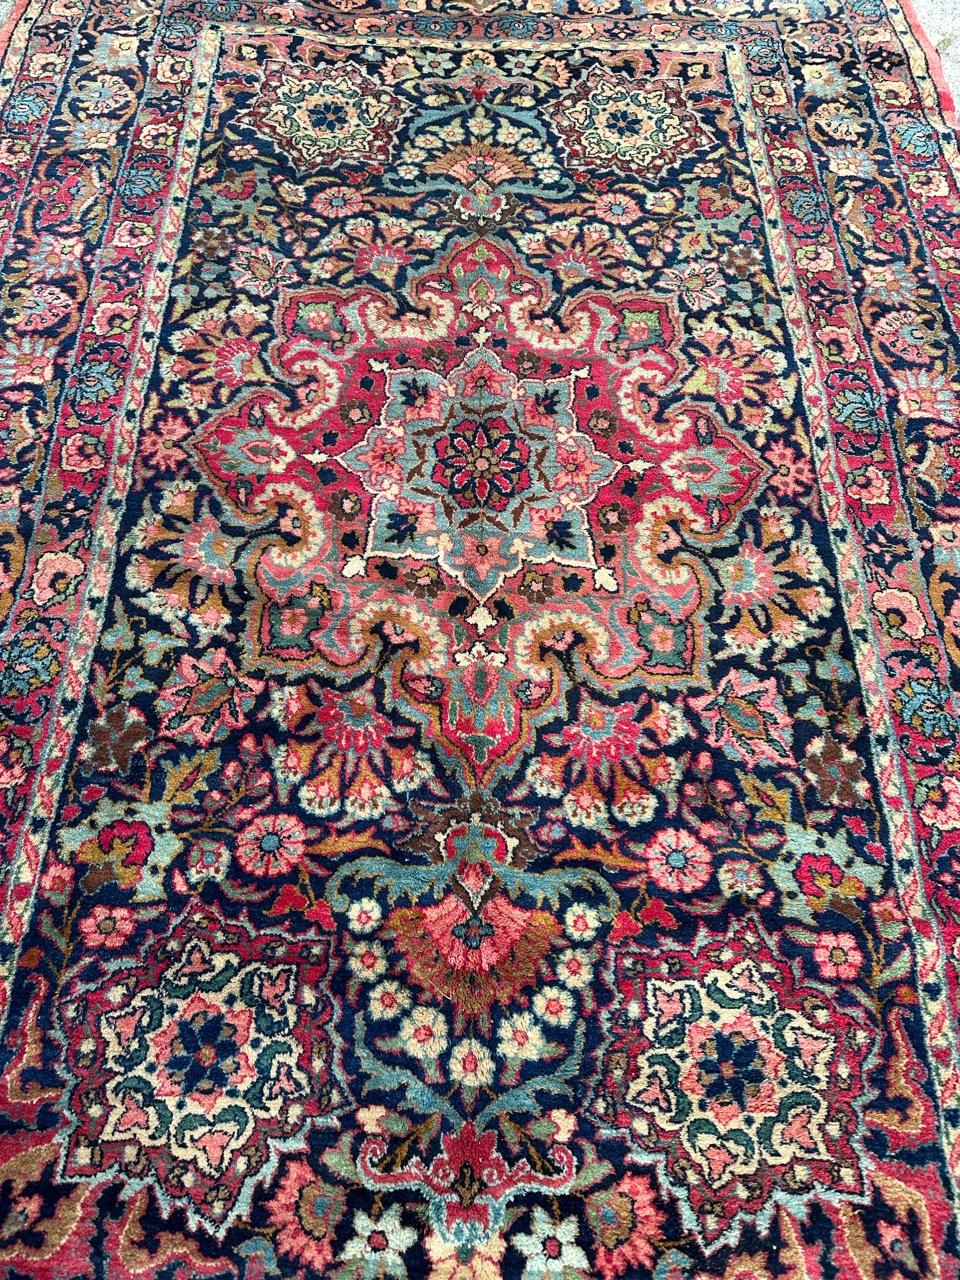 Entdecken Sie die zeitlose Eleganz eines antiken Ispahan-Teppichs aus dem späten 19. Jahrhundert. Dieses sorgfältig mit Wolle auf einem Baumwollgrund geknüpfte Meisterwerk zeigt ein kompliziertes Blumenfeld auf nachtblauer Leinwand. Es ist mit